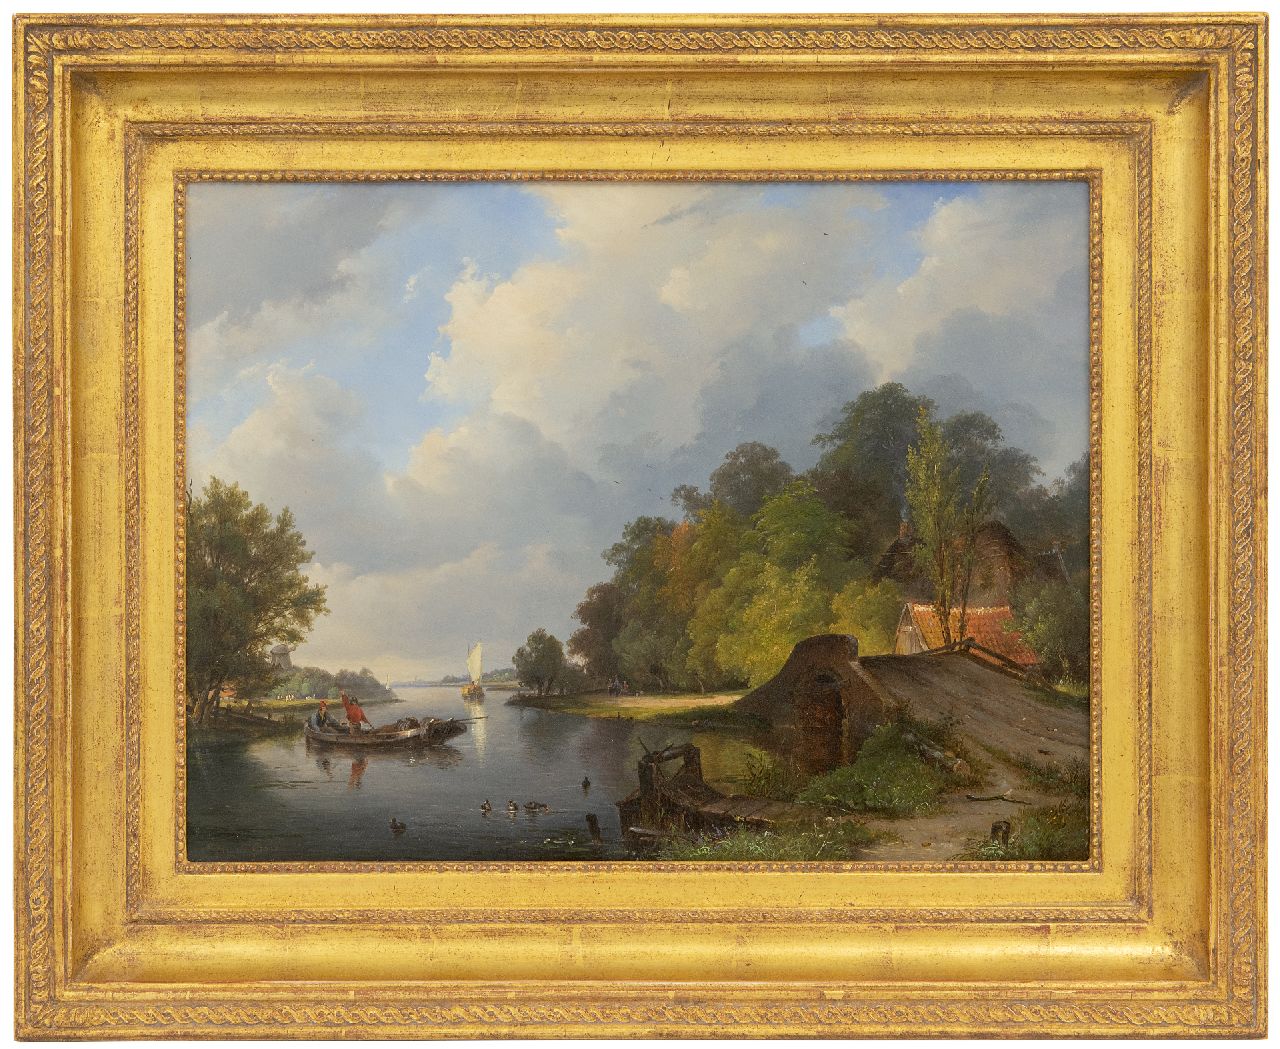 Breuhaus de Groot F.  | Frans Breuhaus de Groot | Schilderijen te koop aangeboden | Zomerdag langs de rivier, olieverf op paneel 33,5 x 44,3 cm, gesigneerd linksonder